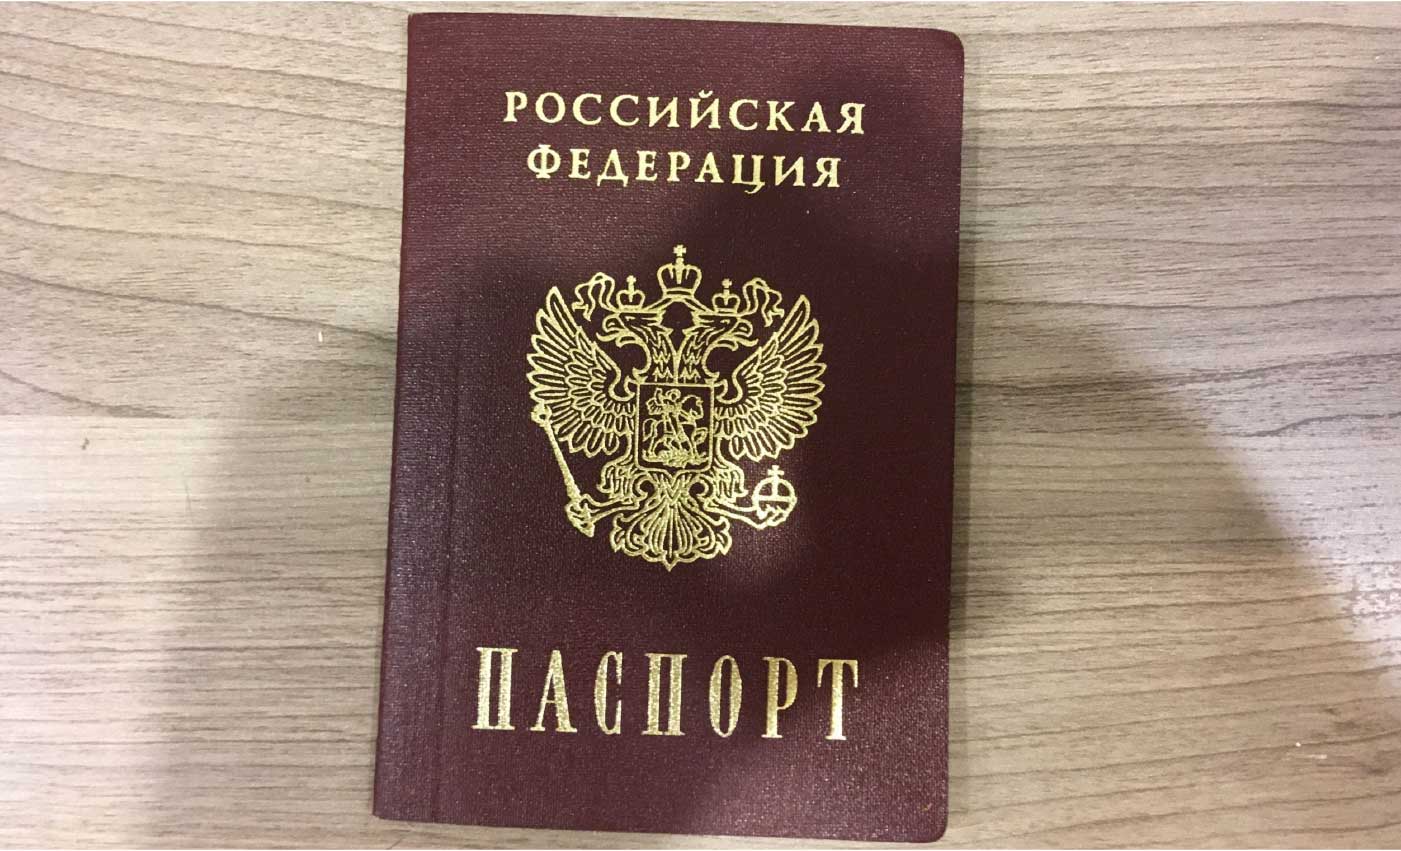 45 — время паспорт поменять